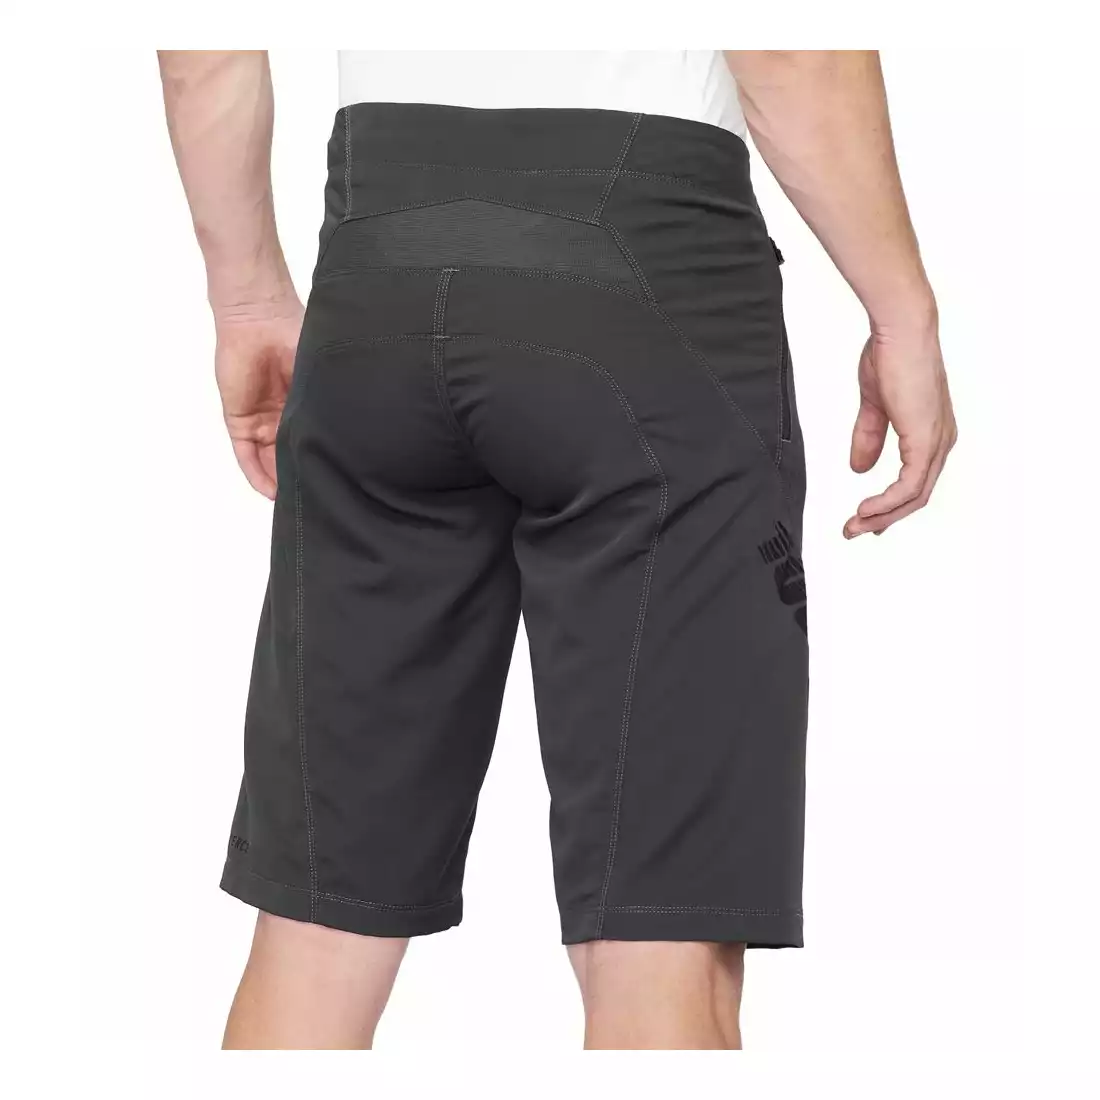 100% AIRMATIC Men's cycling shorts, gray